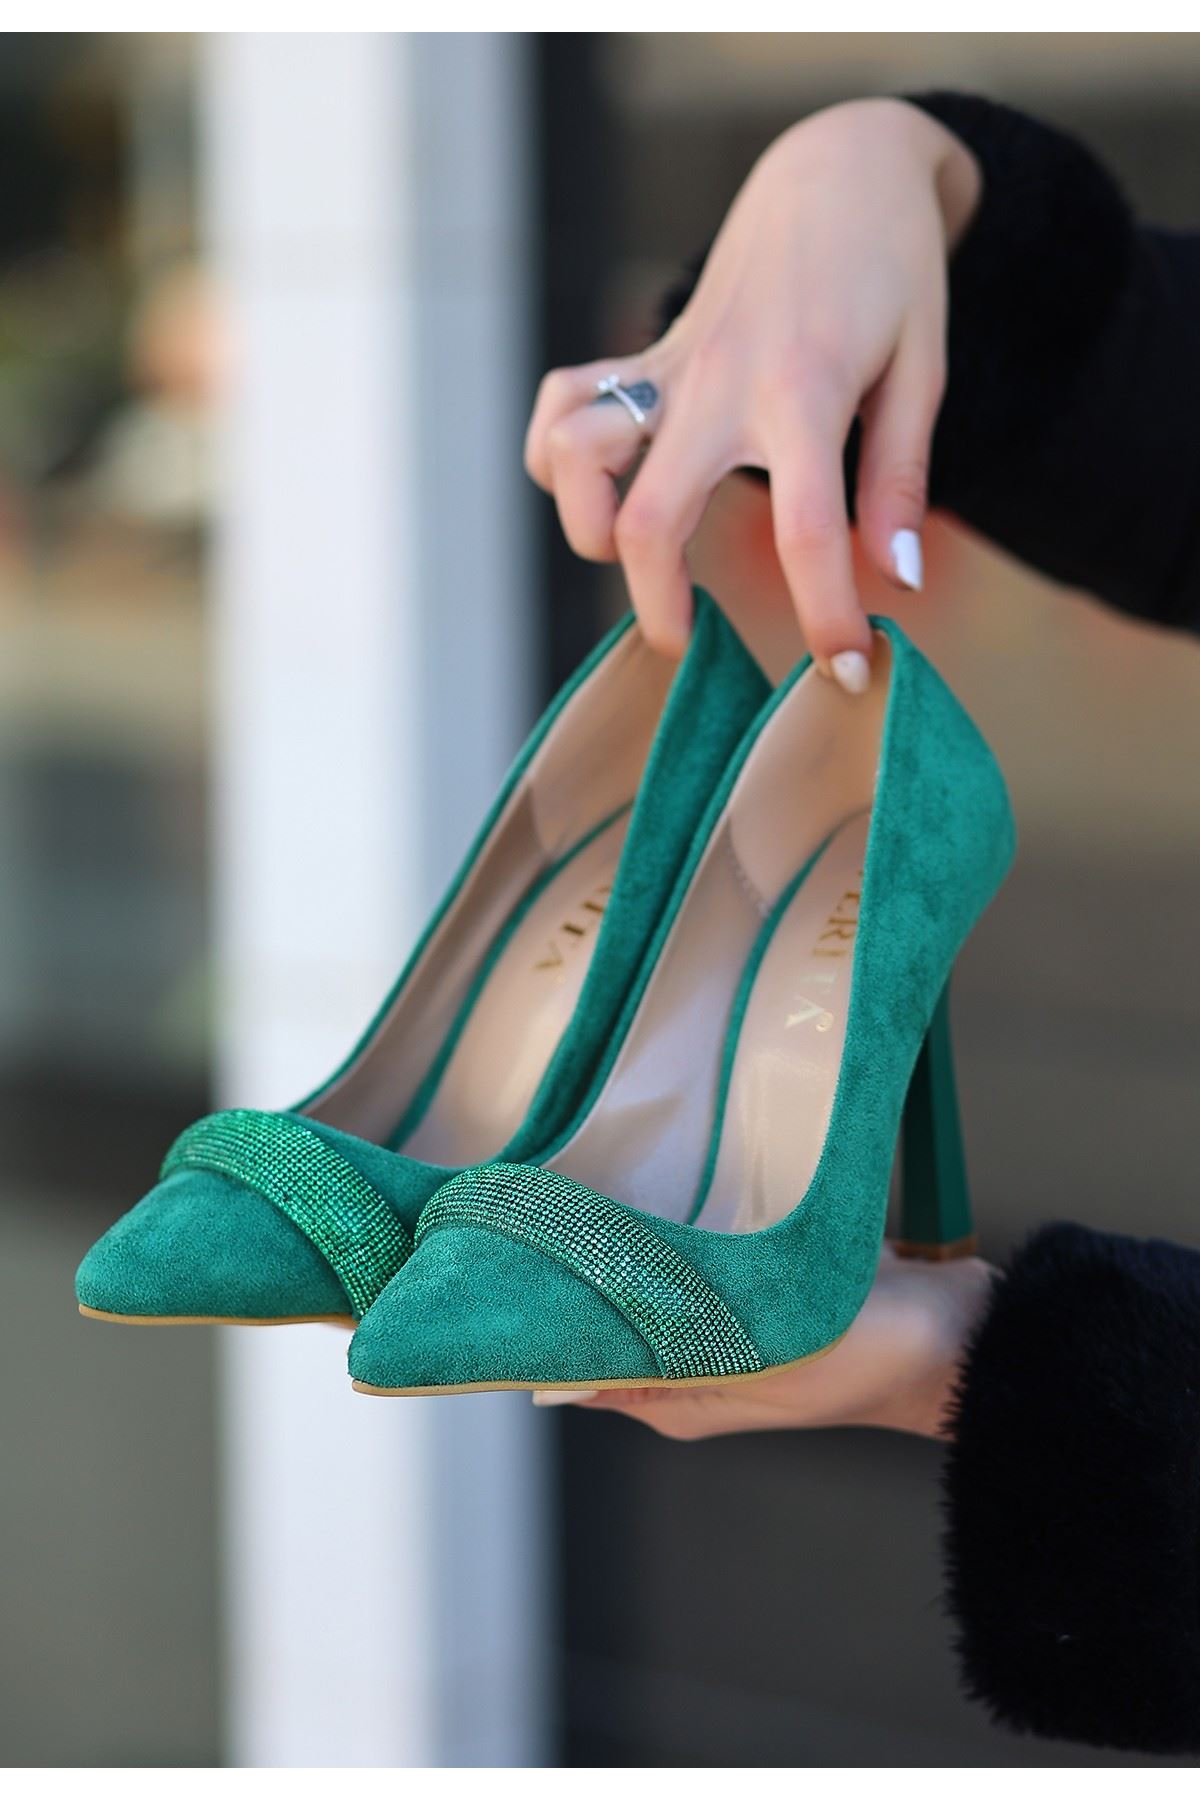 Gida Yeşil Süet Stiletto Ayakkabı